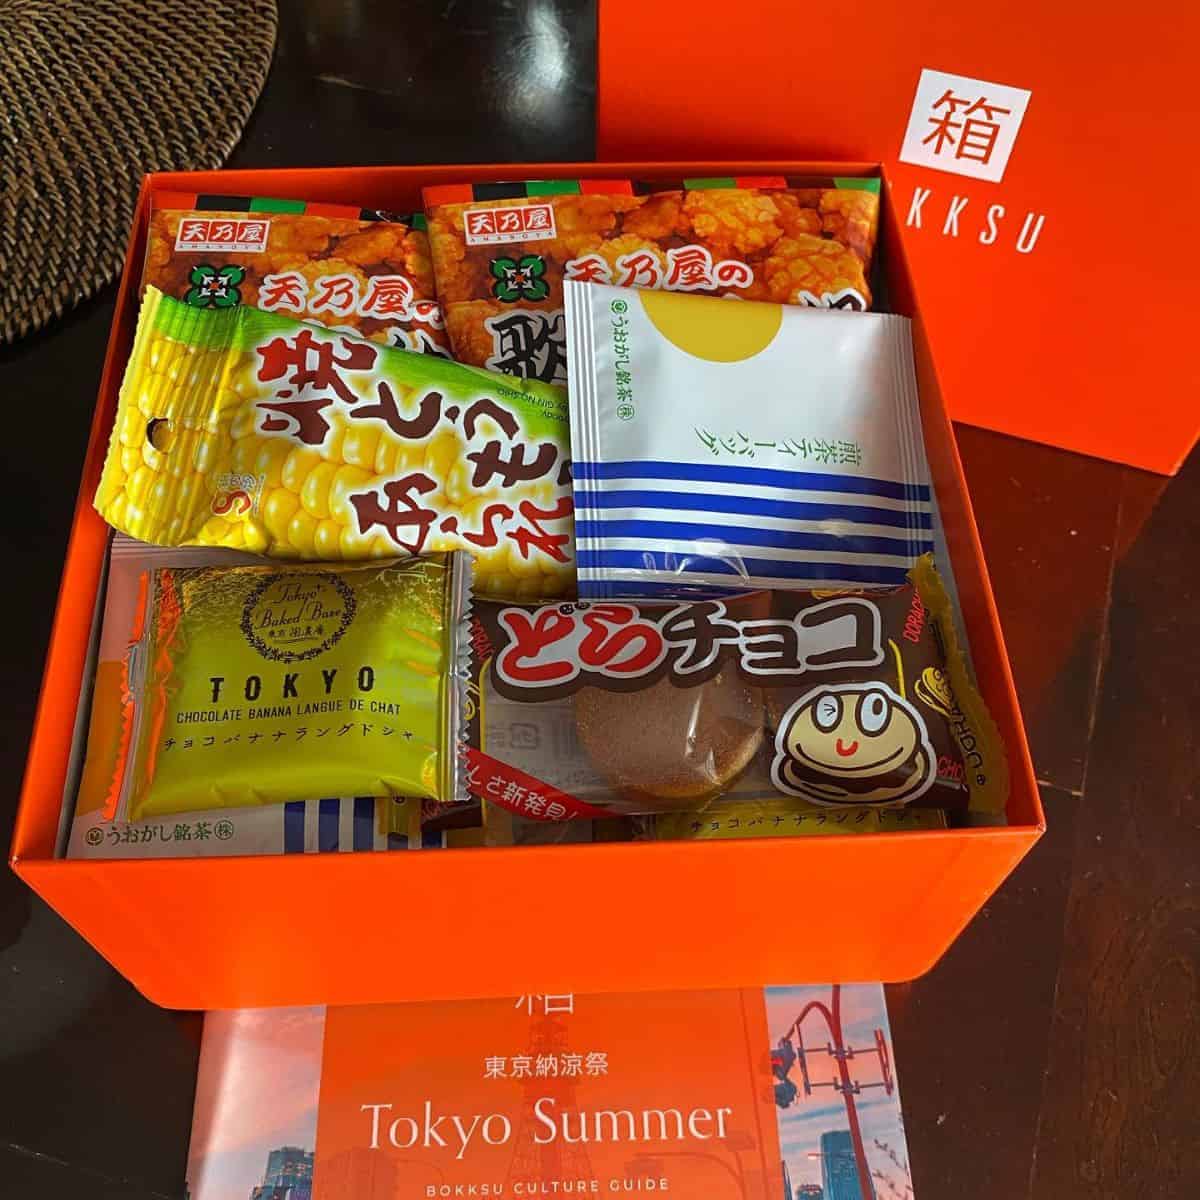 Tokyo Summer treats from Bokksu inside a red box